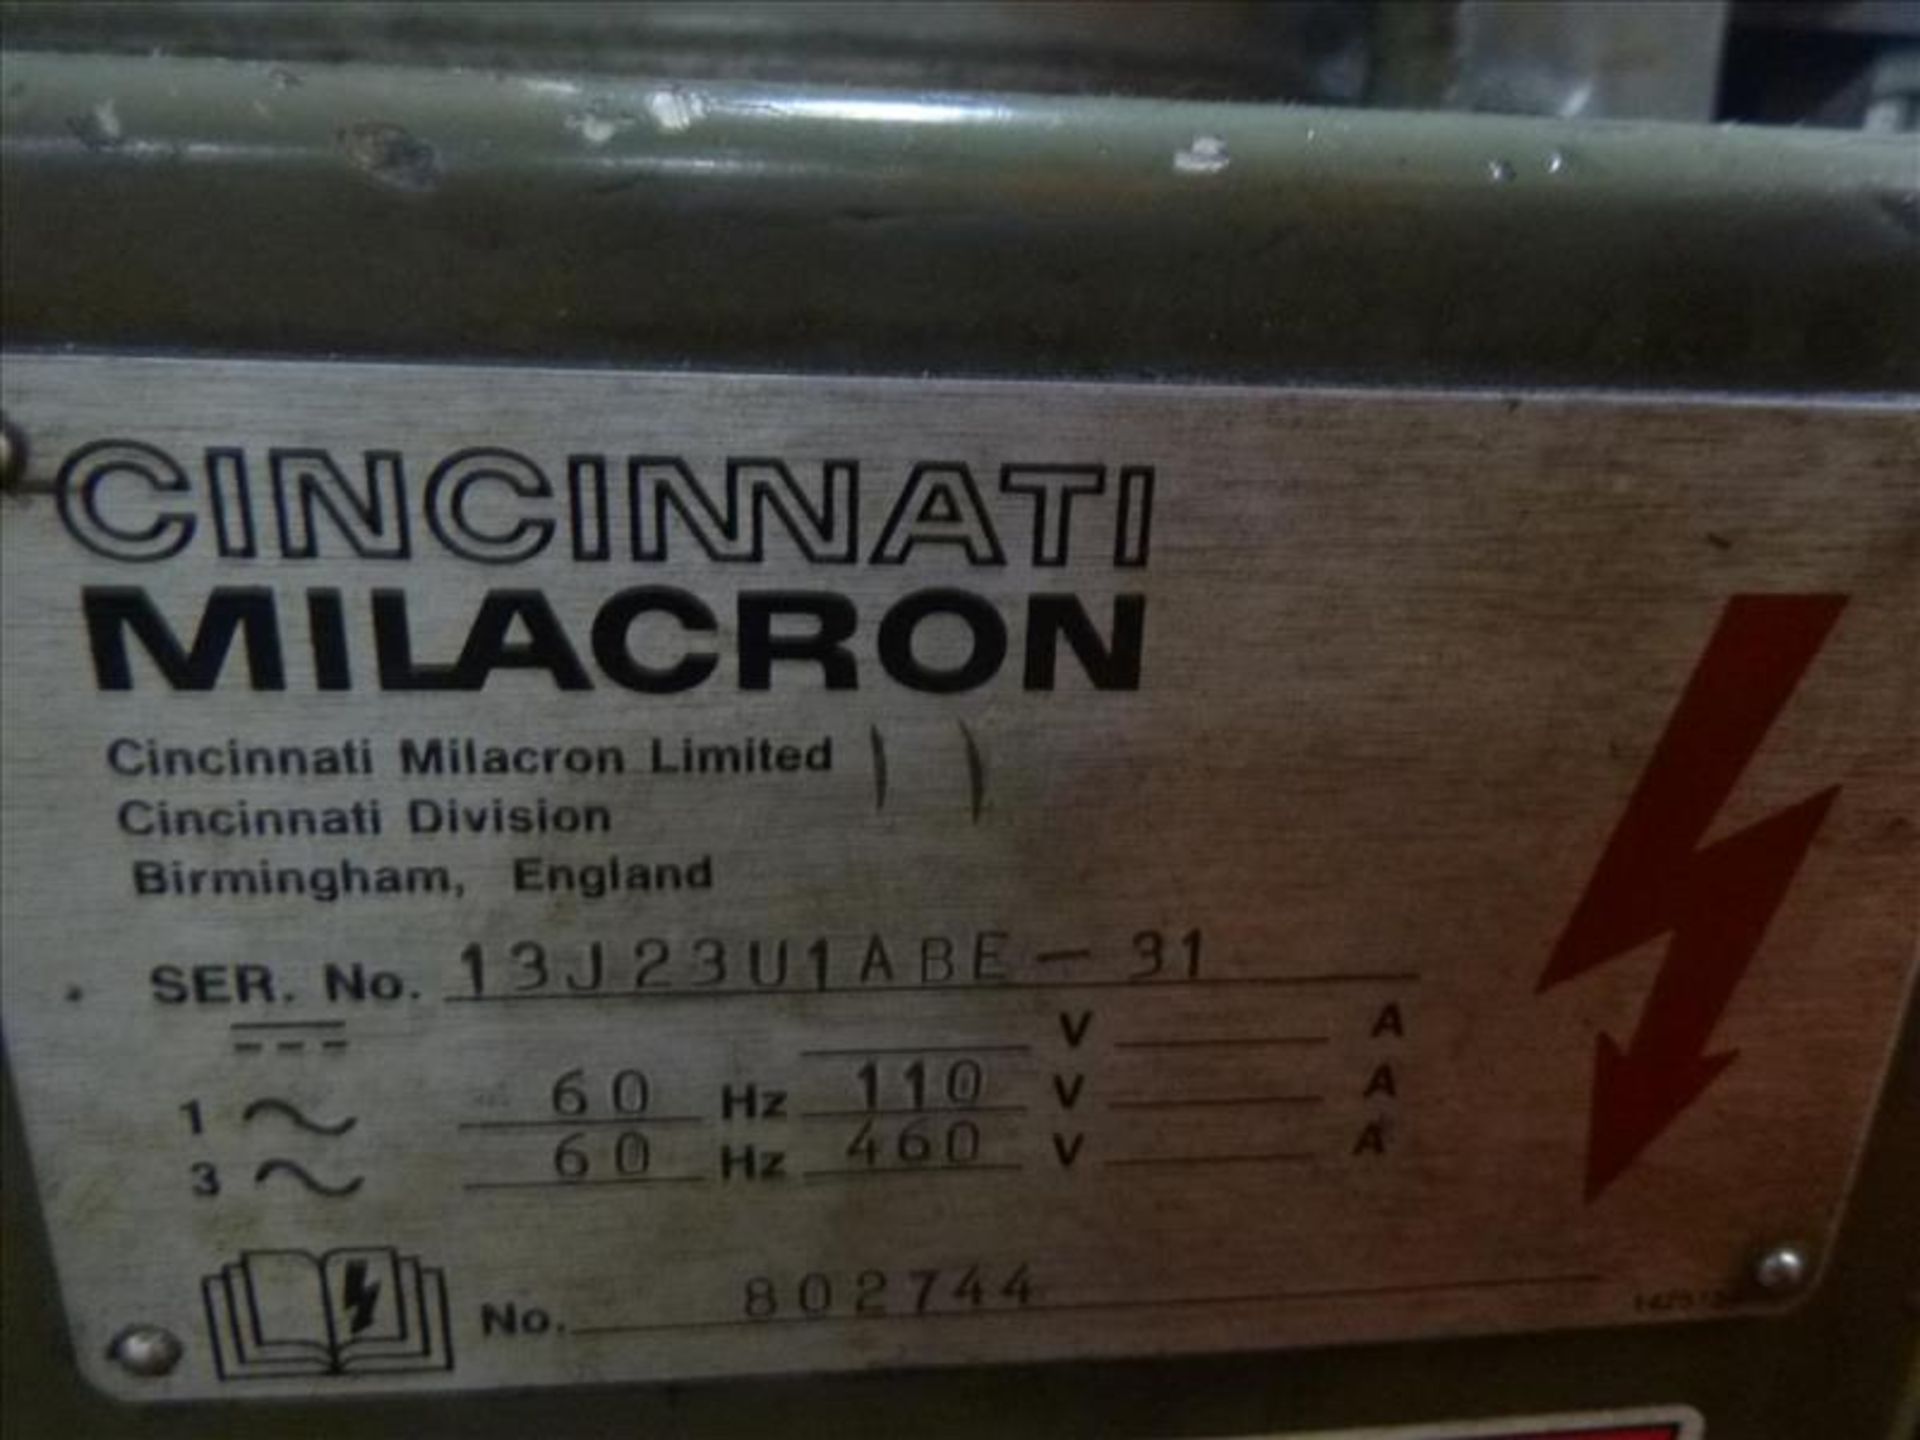 CINCINNATI MILACRON 2MK Universal Mill, s/n 13J23UIABE-31 - Image 5 of 8